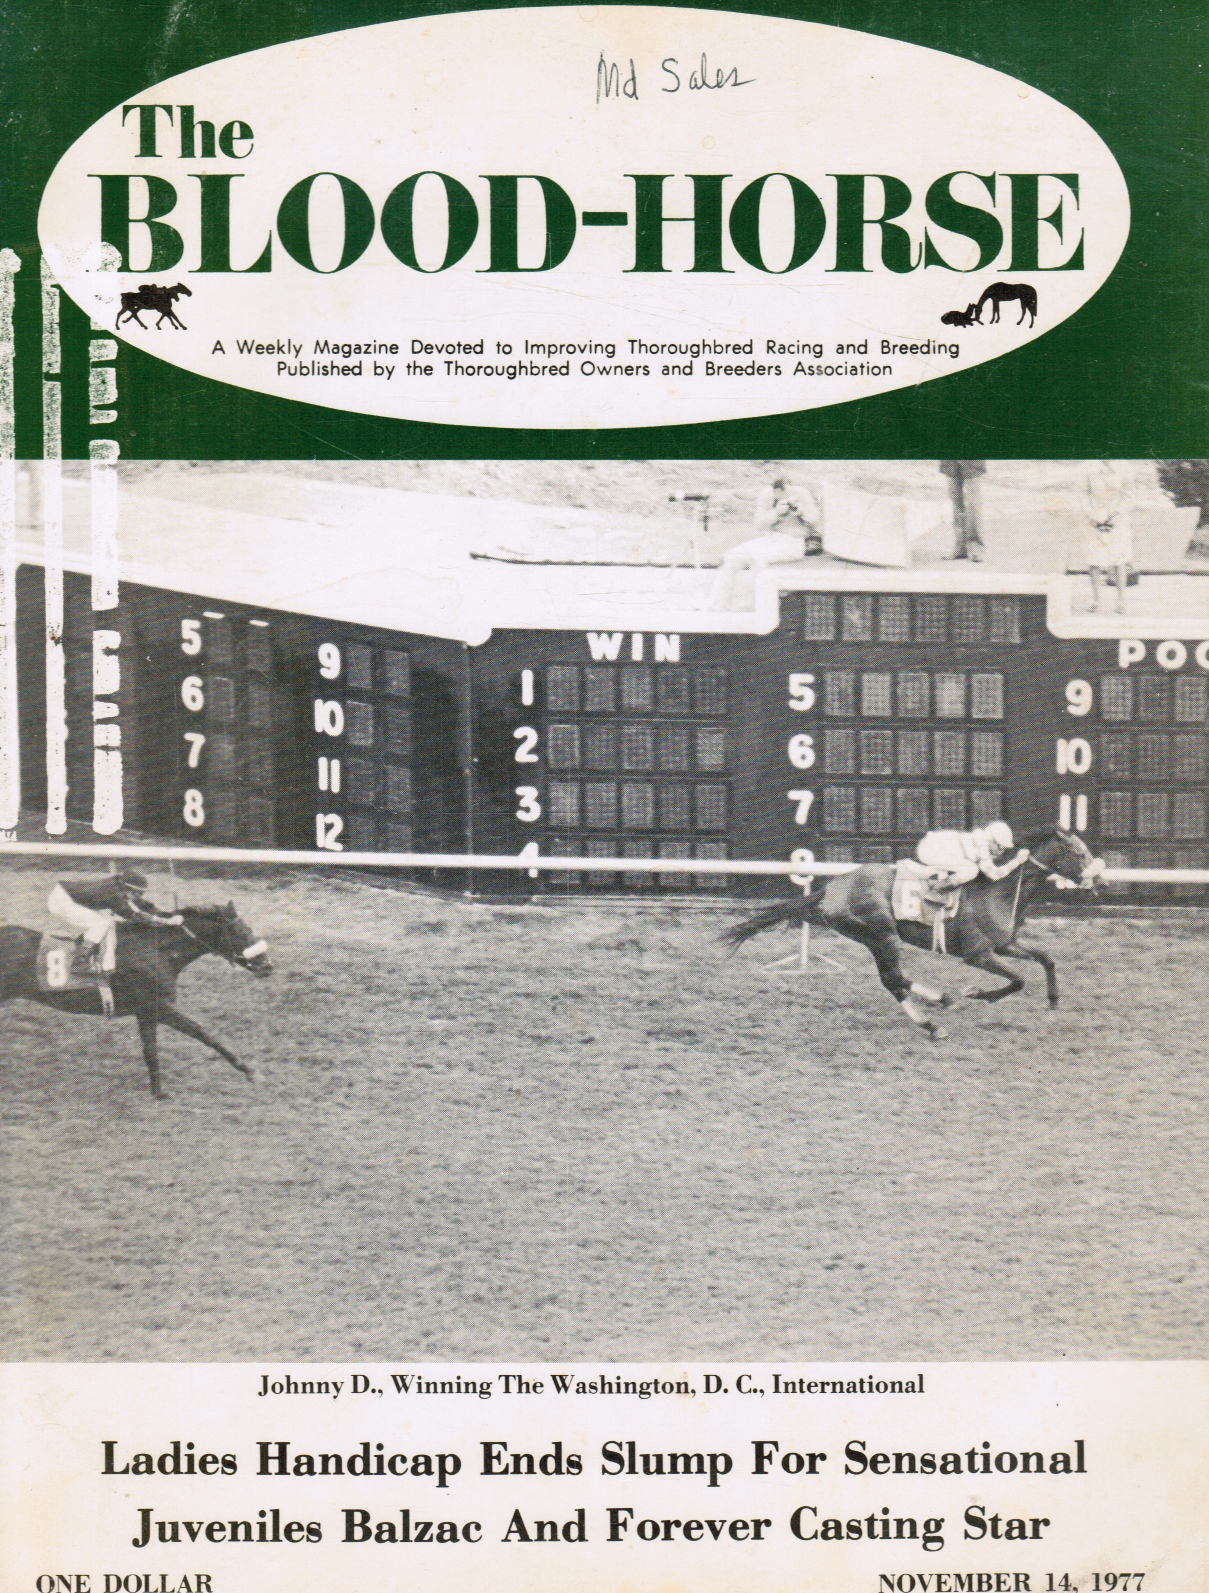 KENT HOLLINGSWORTH, EDITOR - The Blood-Horse, November 14, 1977, Vol Ciii, No 46